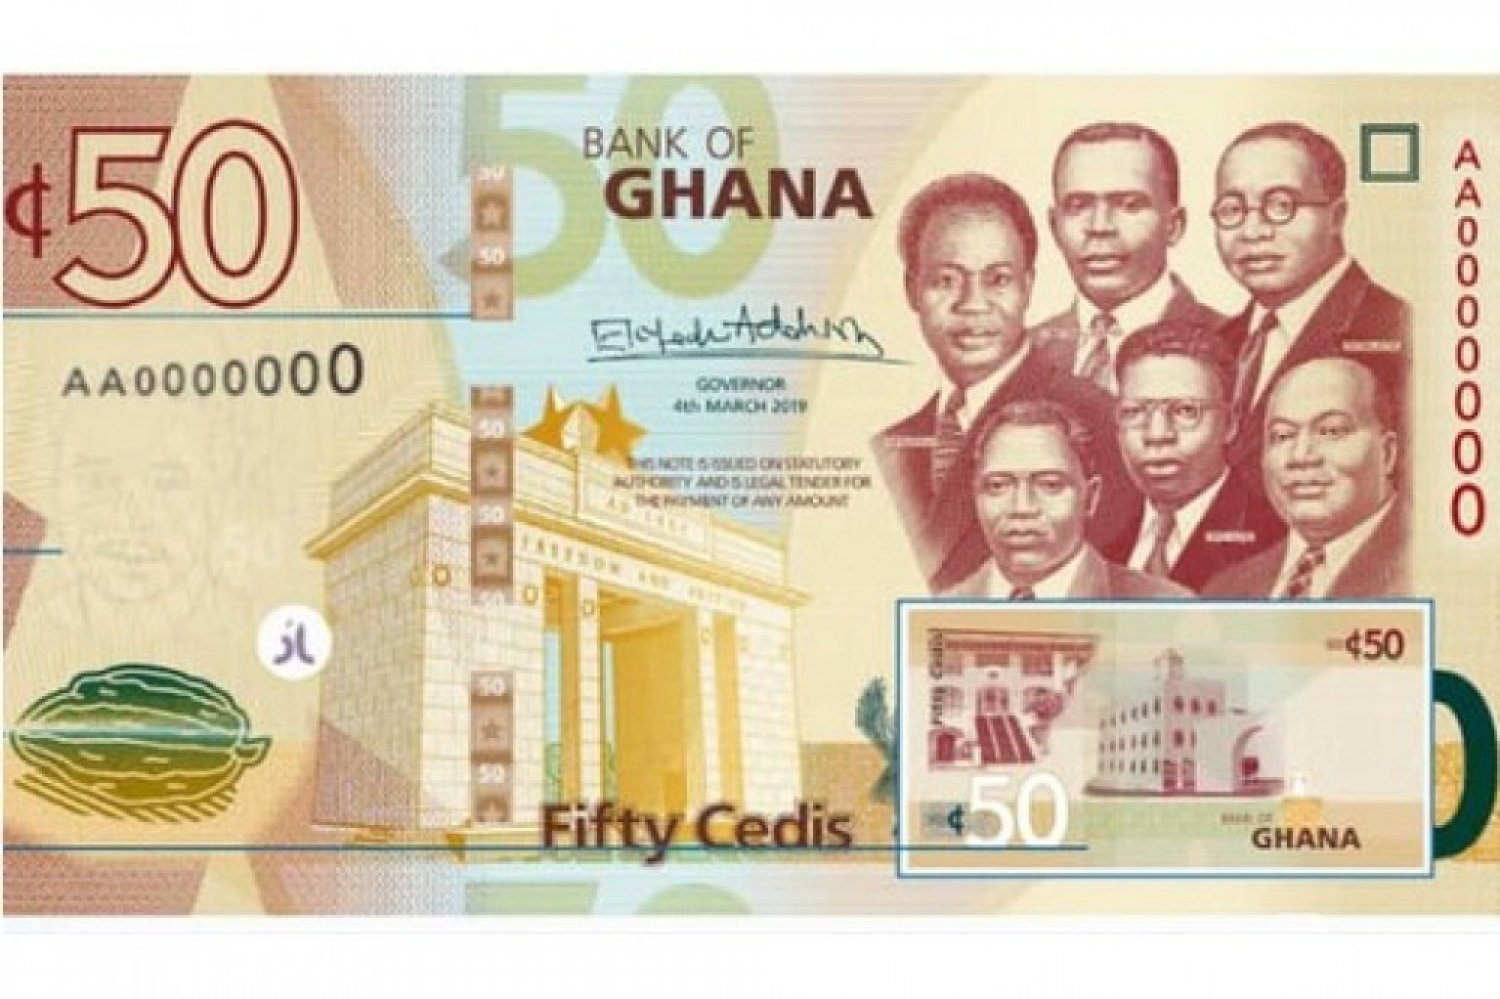 Ghana : Sortie de billets de Ghana cedi actualisés contre la contrefaçon